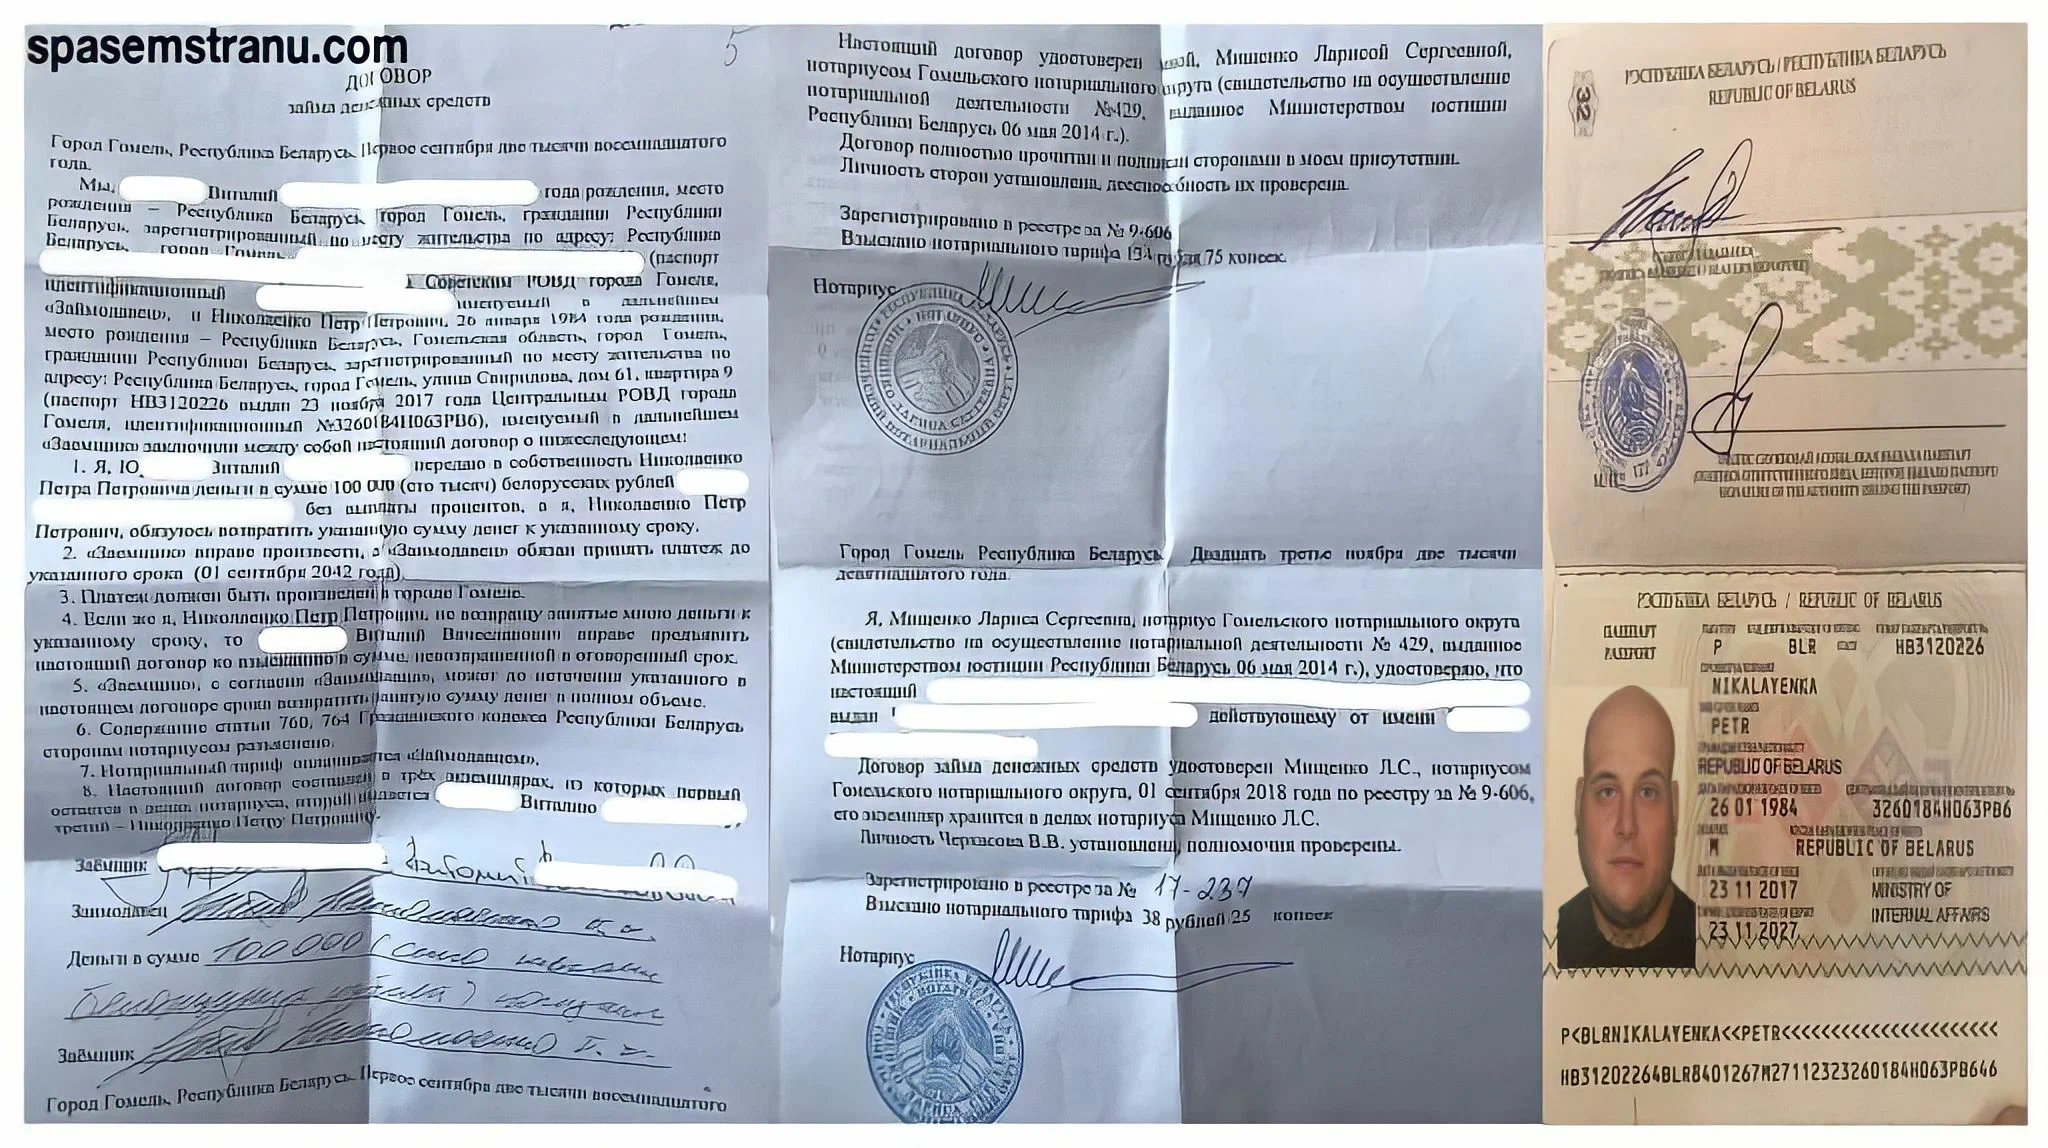 Николаенко Петр материалы исчезнувшие из уголовного дела 